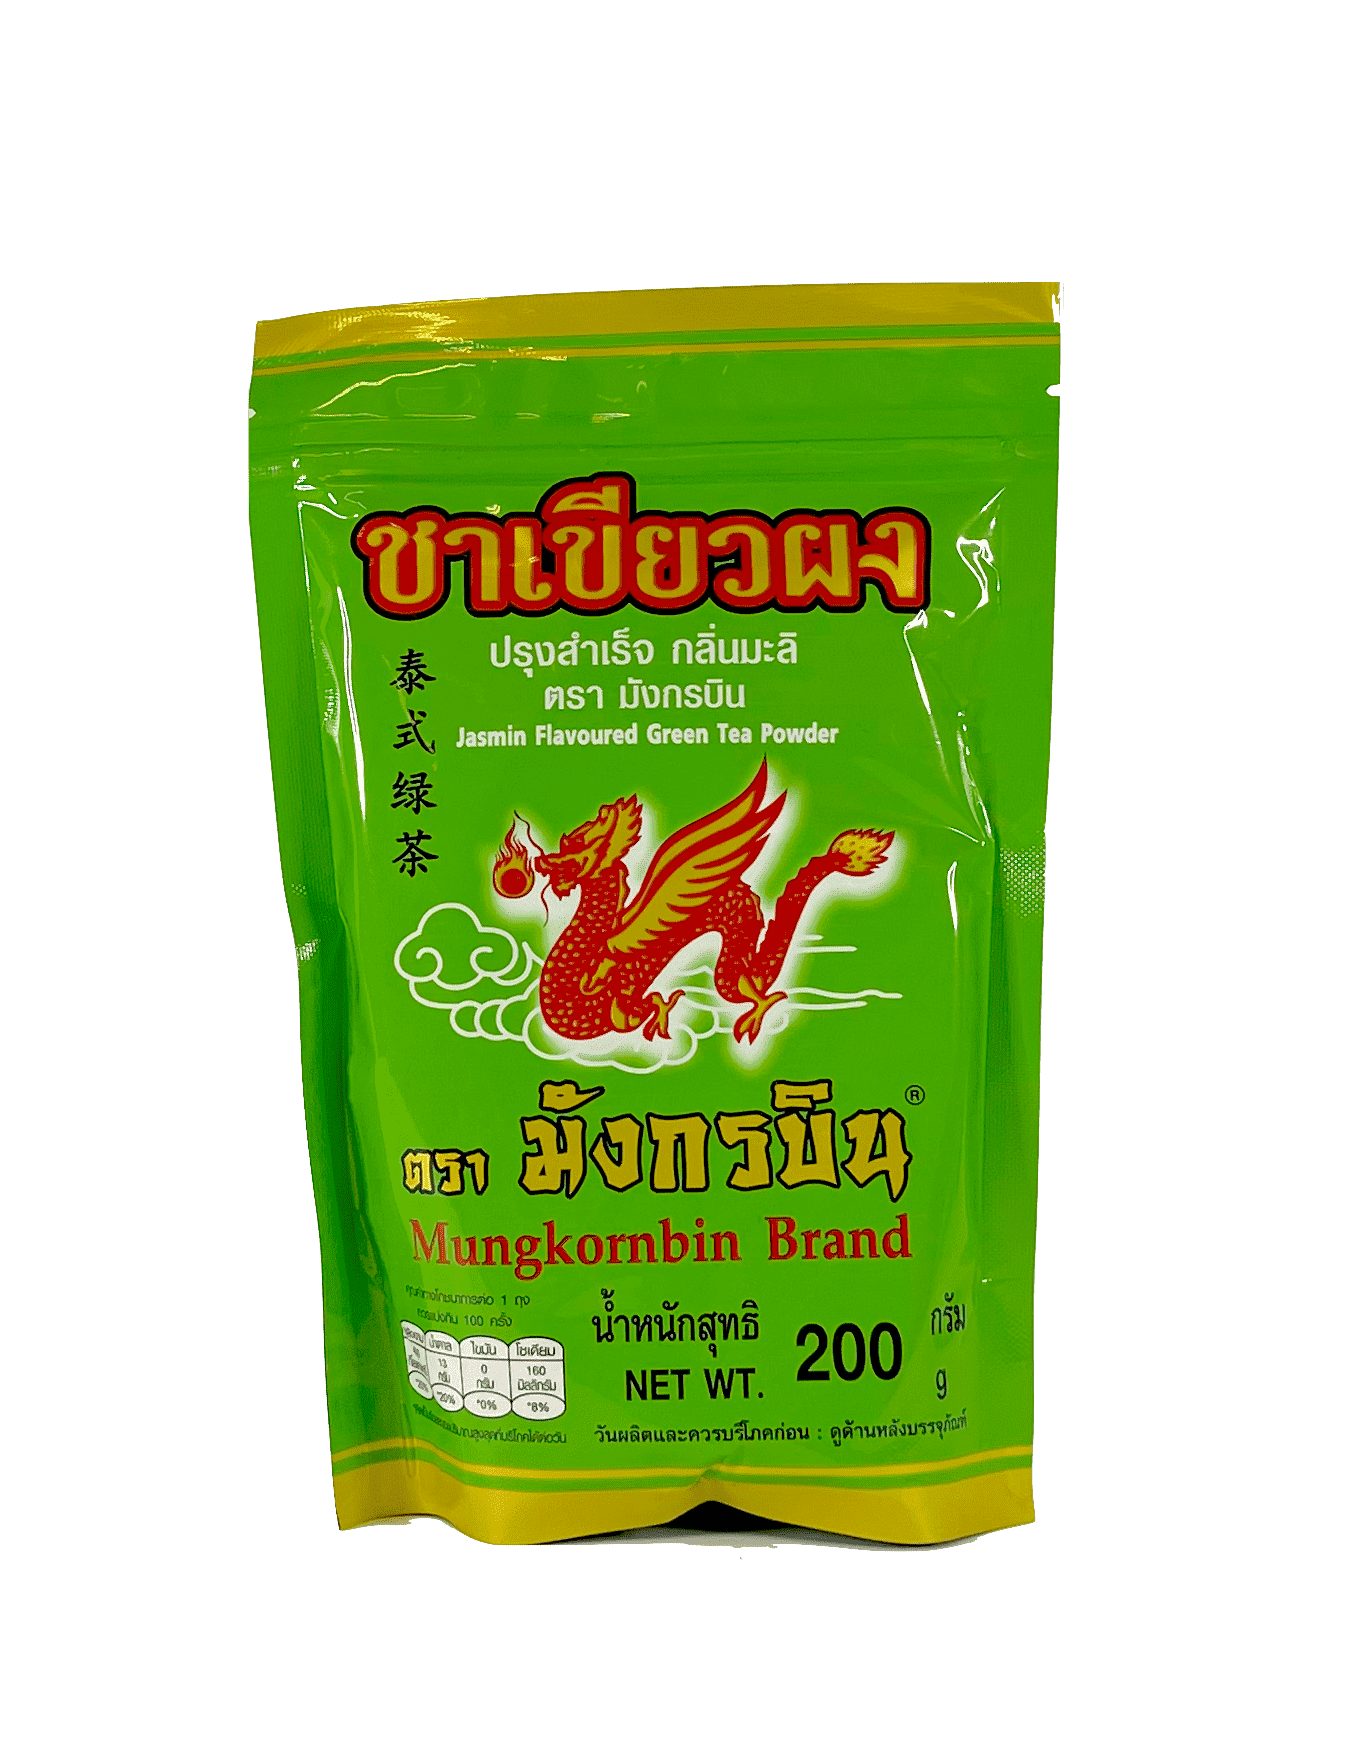 泰式绿茶 200g Mungkornbin 泰国